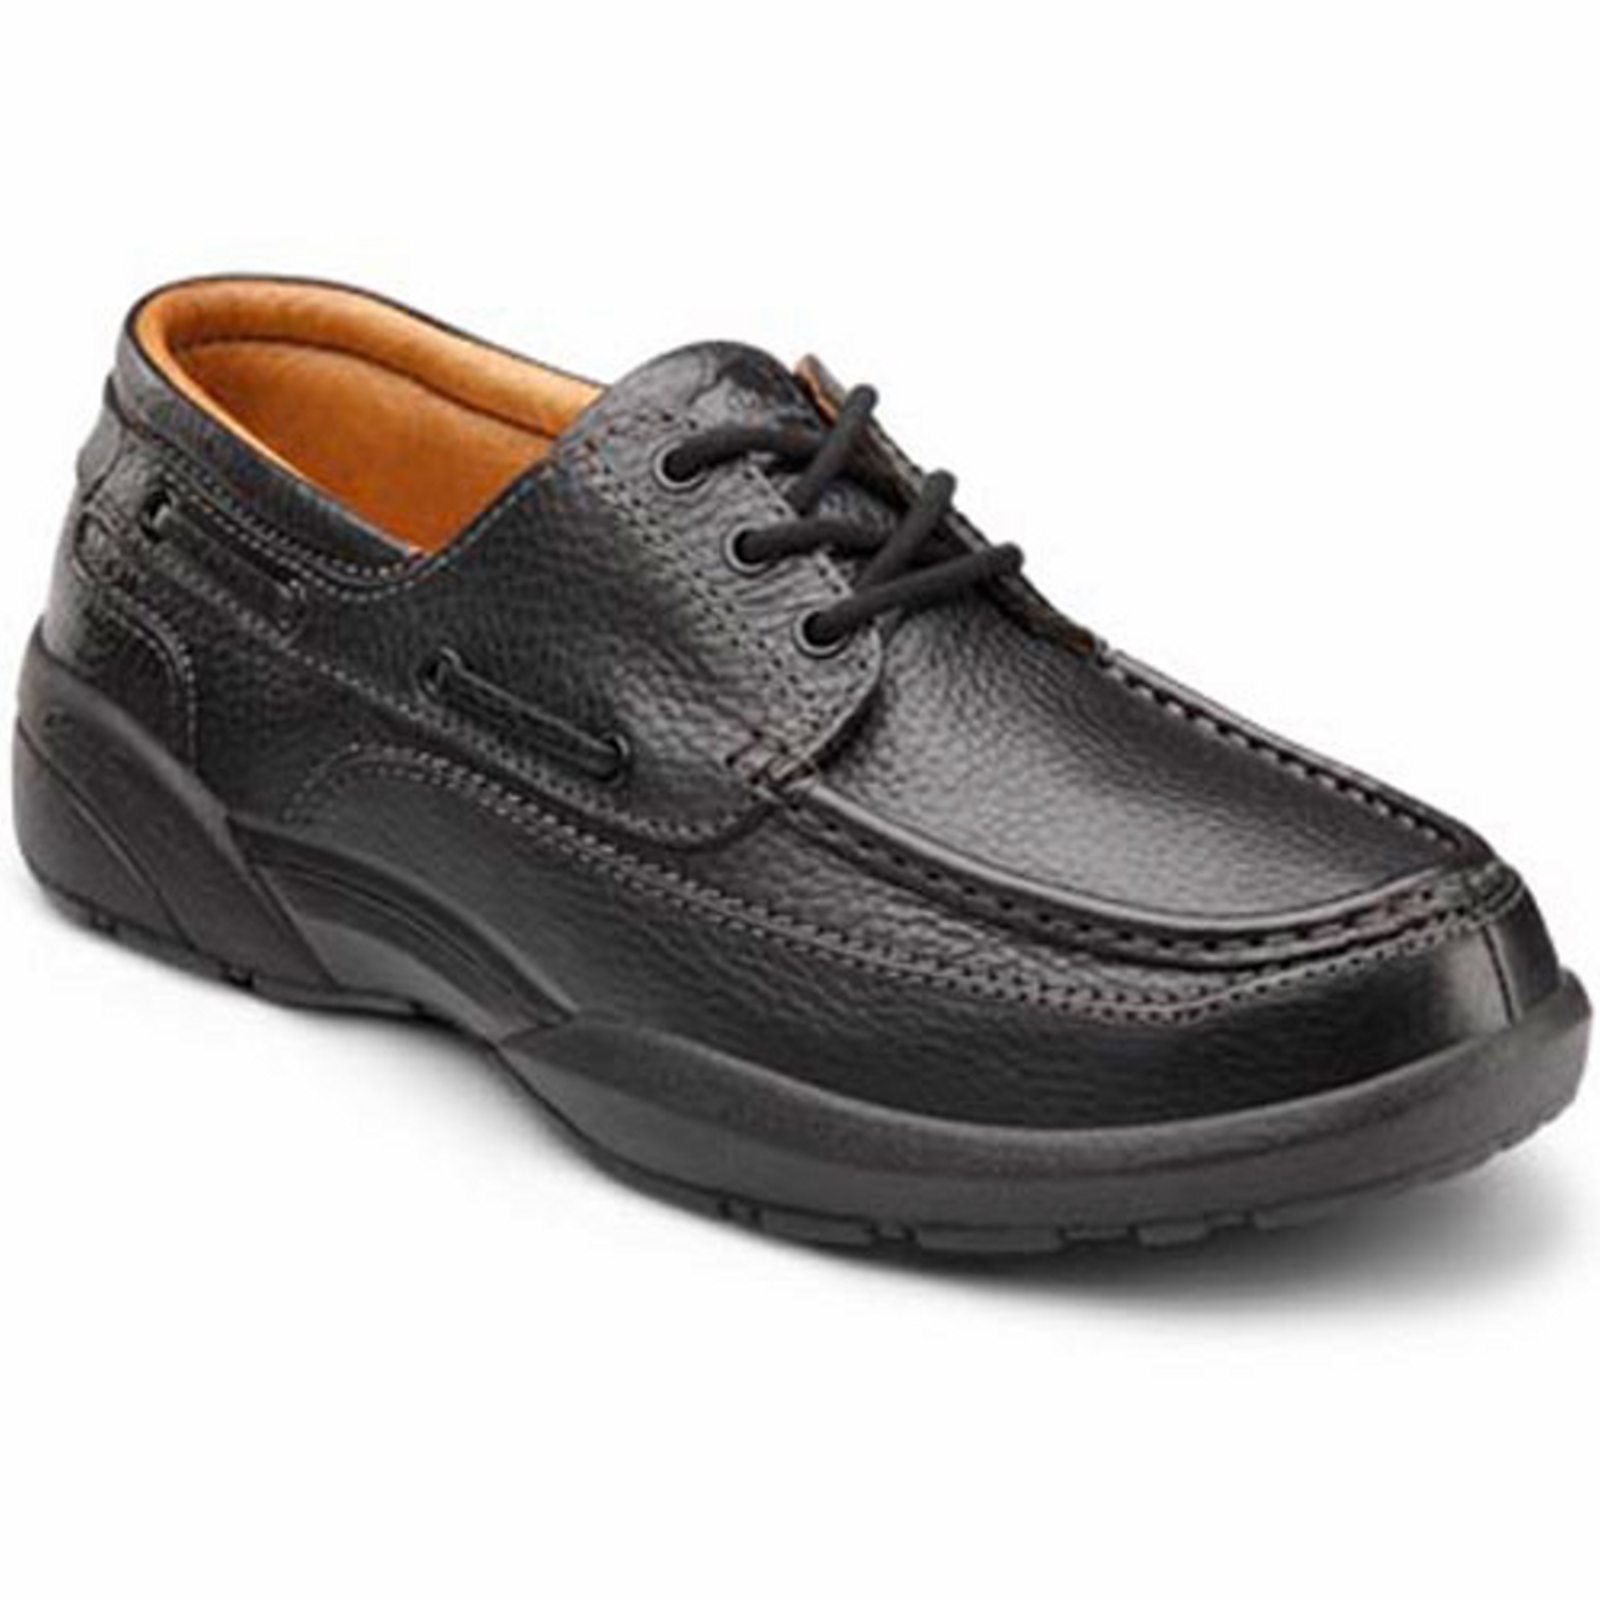 Dr. Comfort Patrick Men's Boat Shoe: 11 Wide (E/2E) Black Lace - image 1 of 4